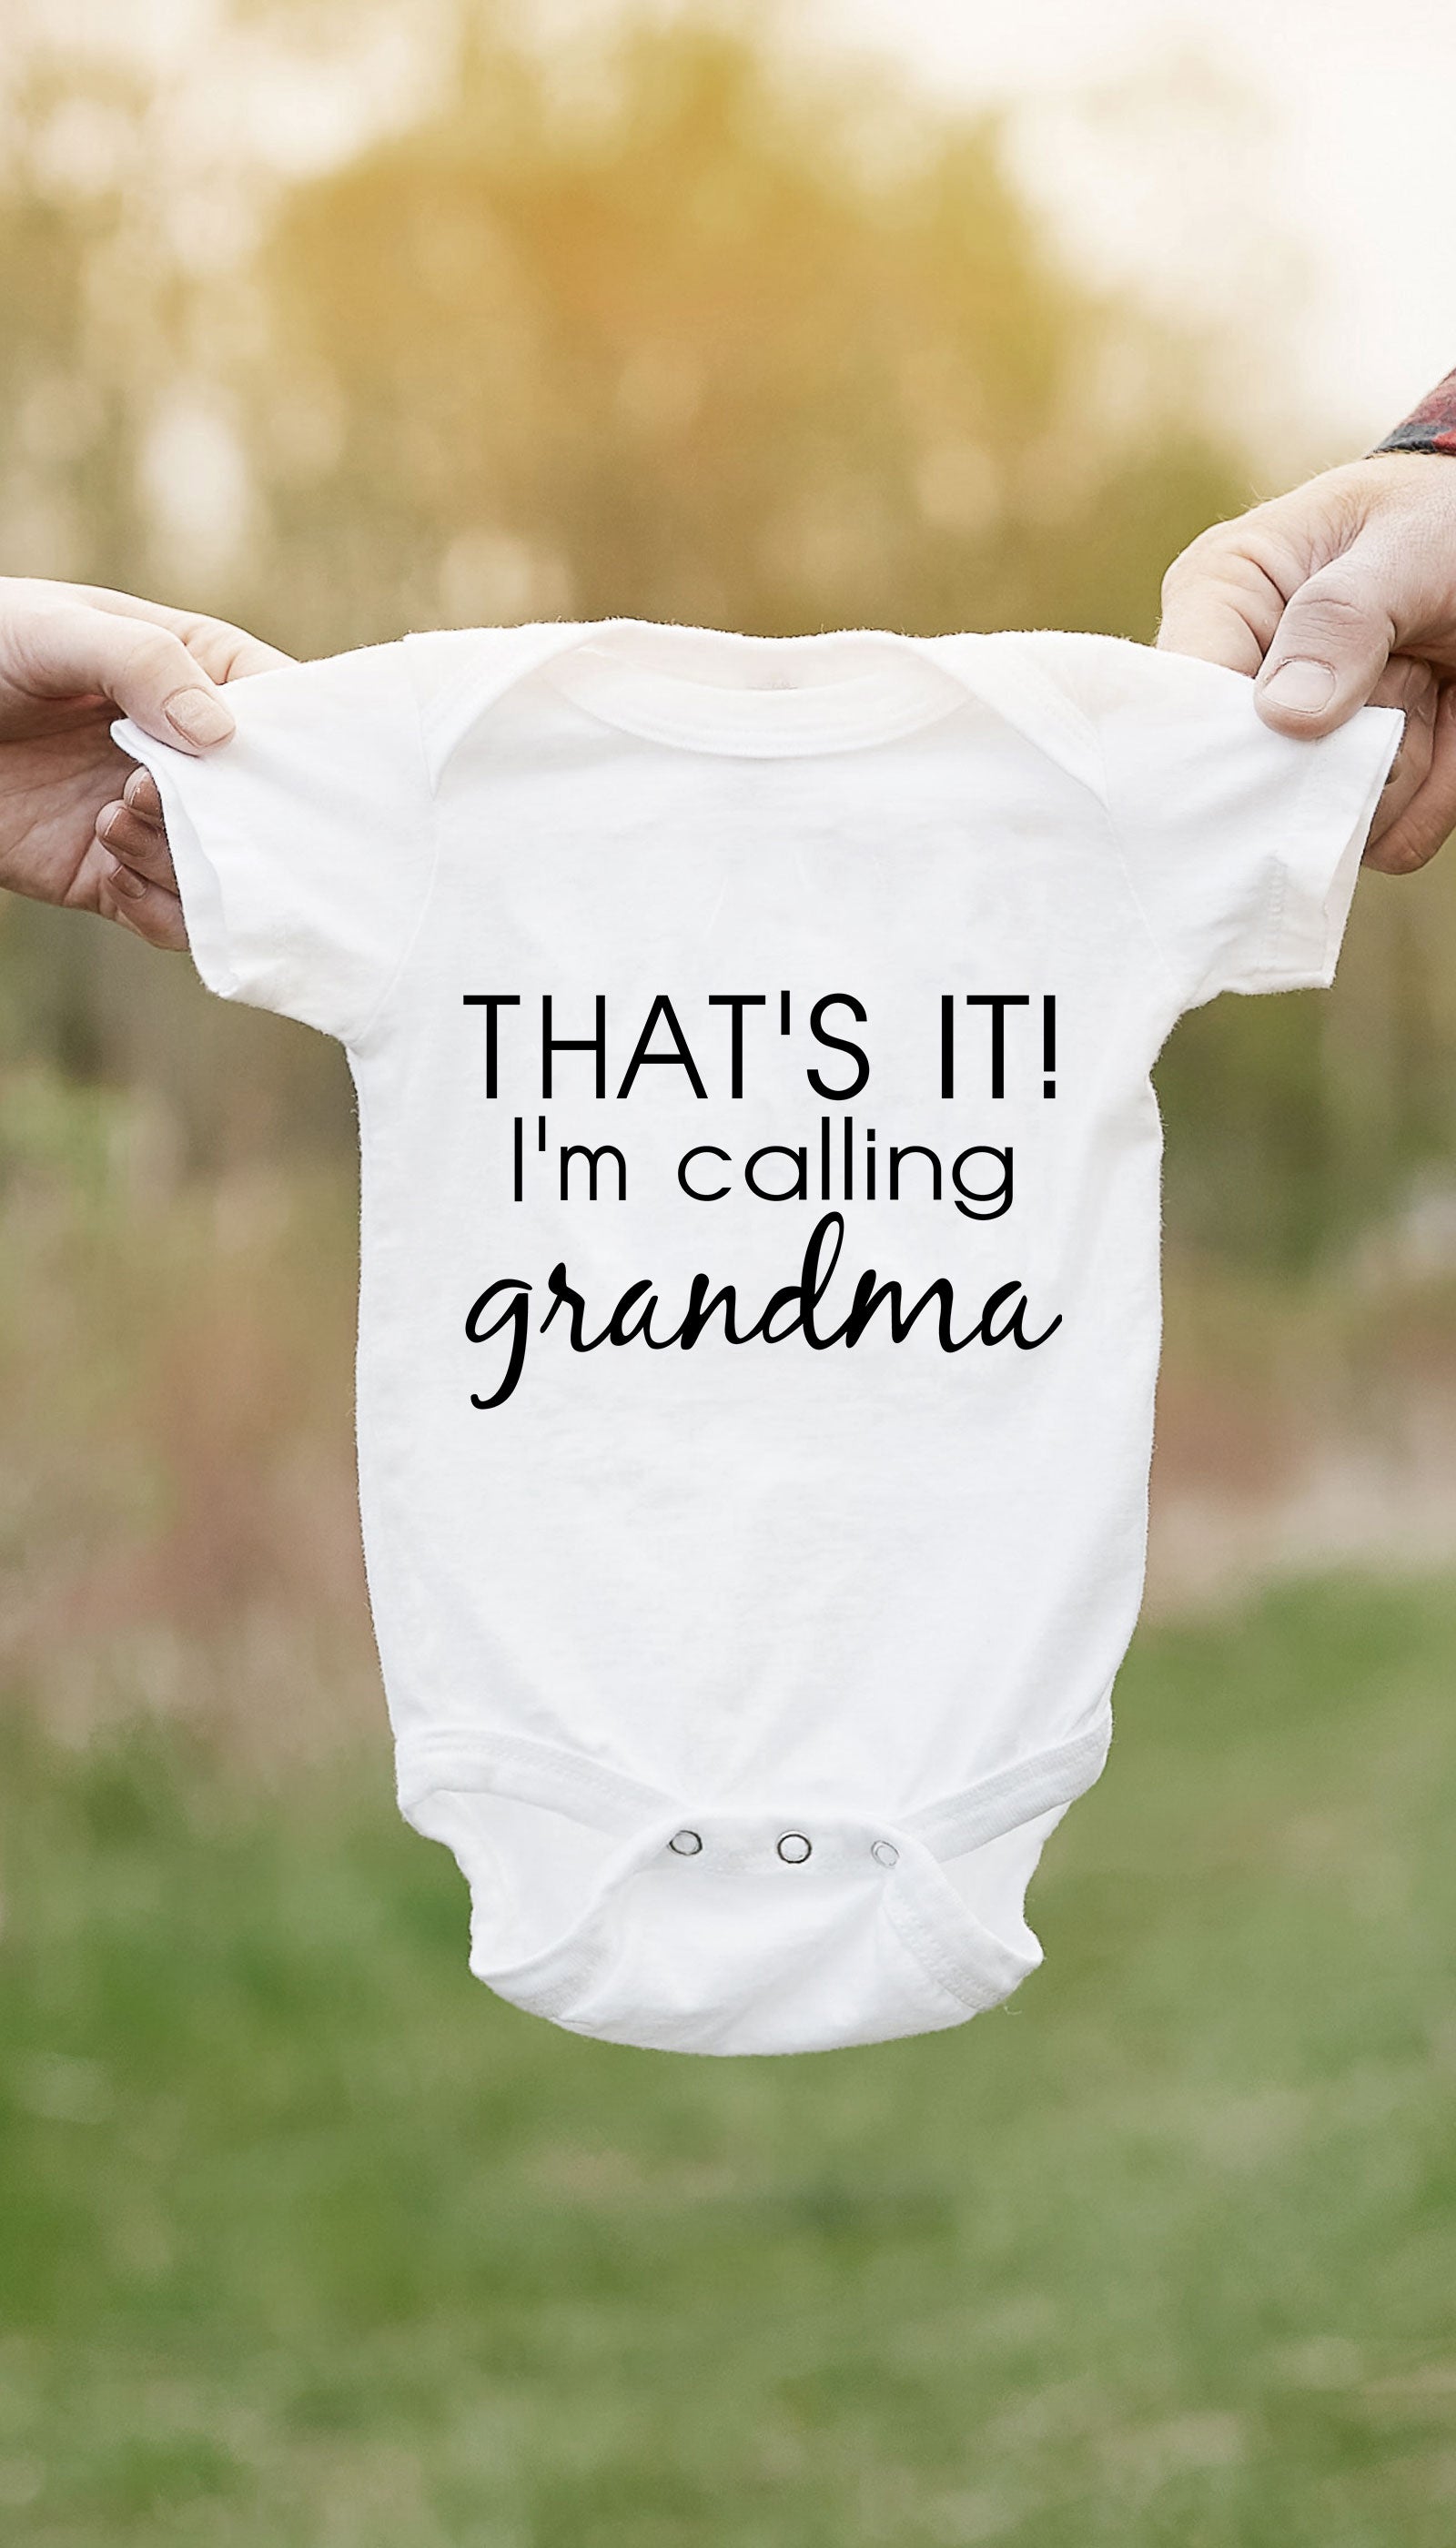 Thats it! I'm calling Grandma, Babylife